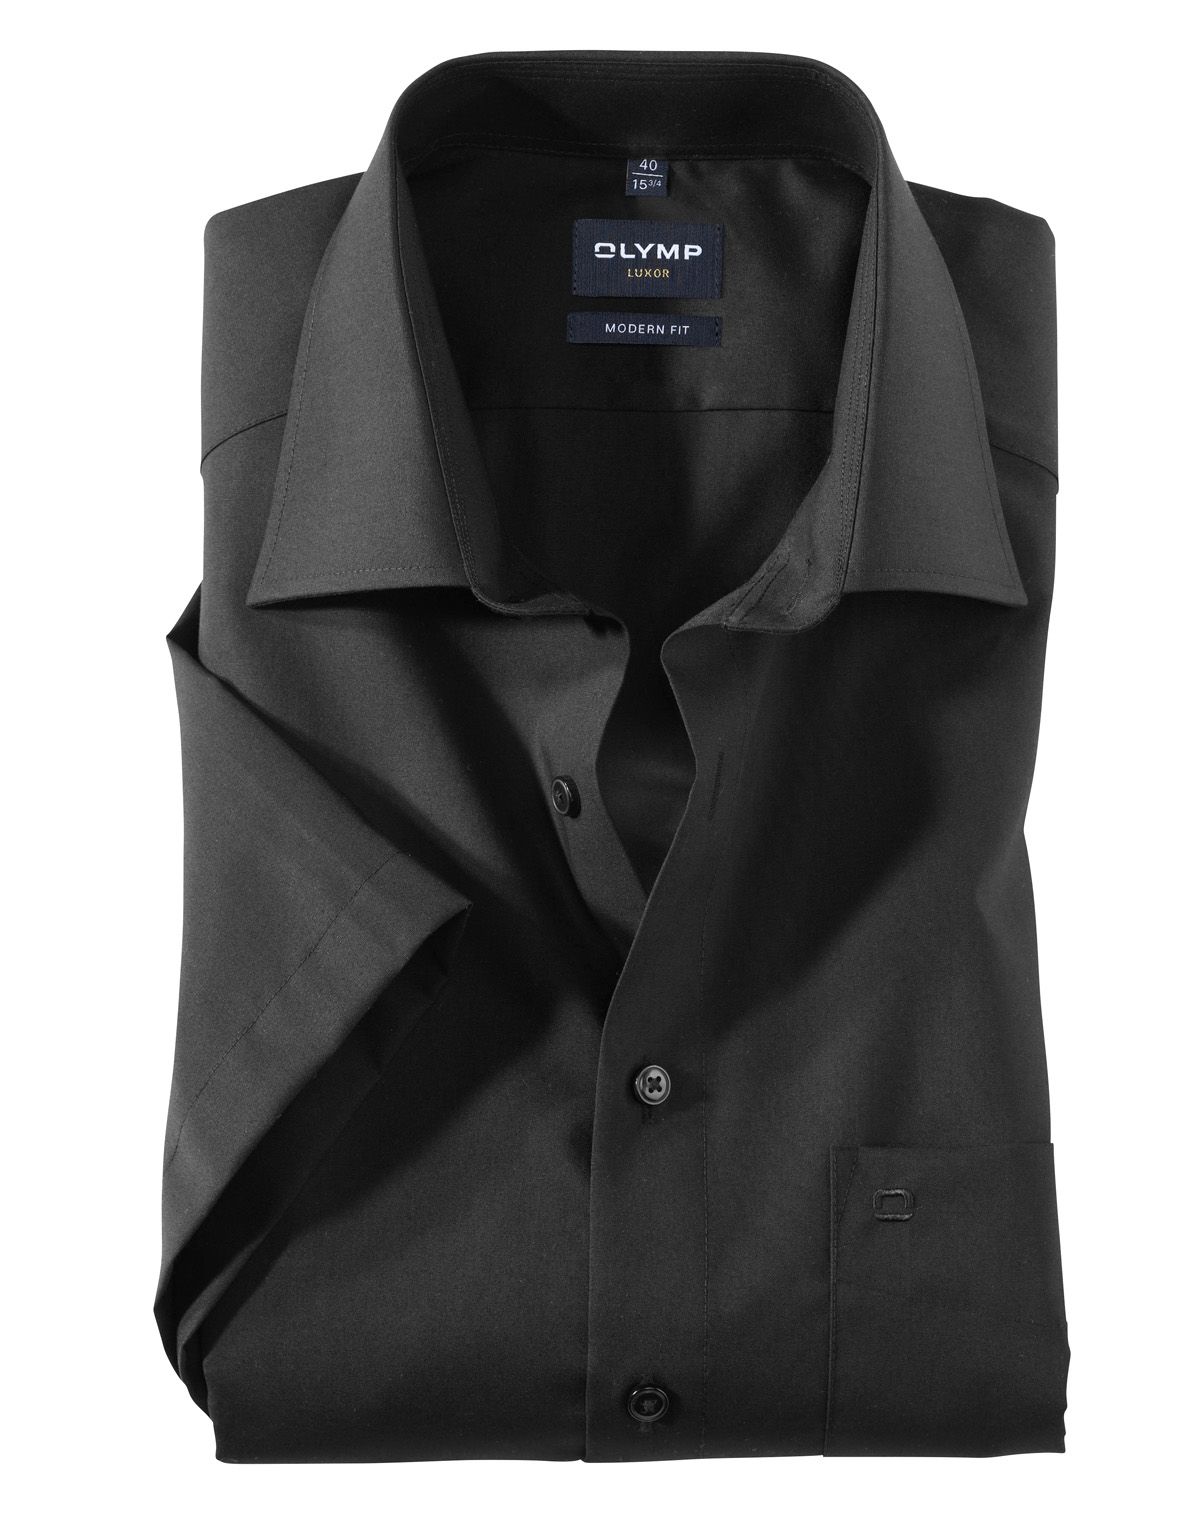 Рубашка мужская OLYMP Luxor, modern fit[ЧЕРНЫЙ]